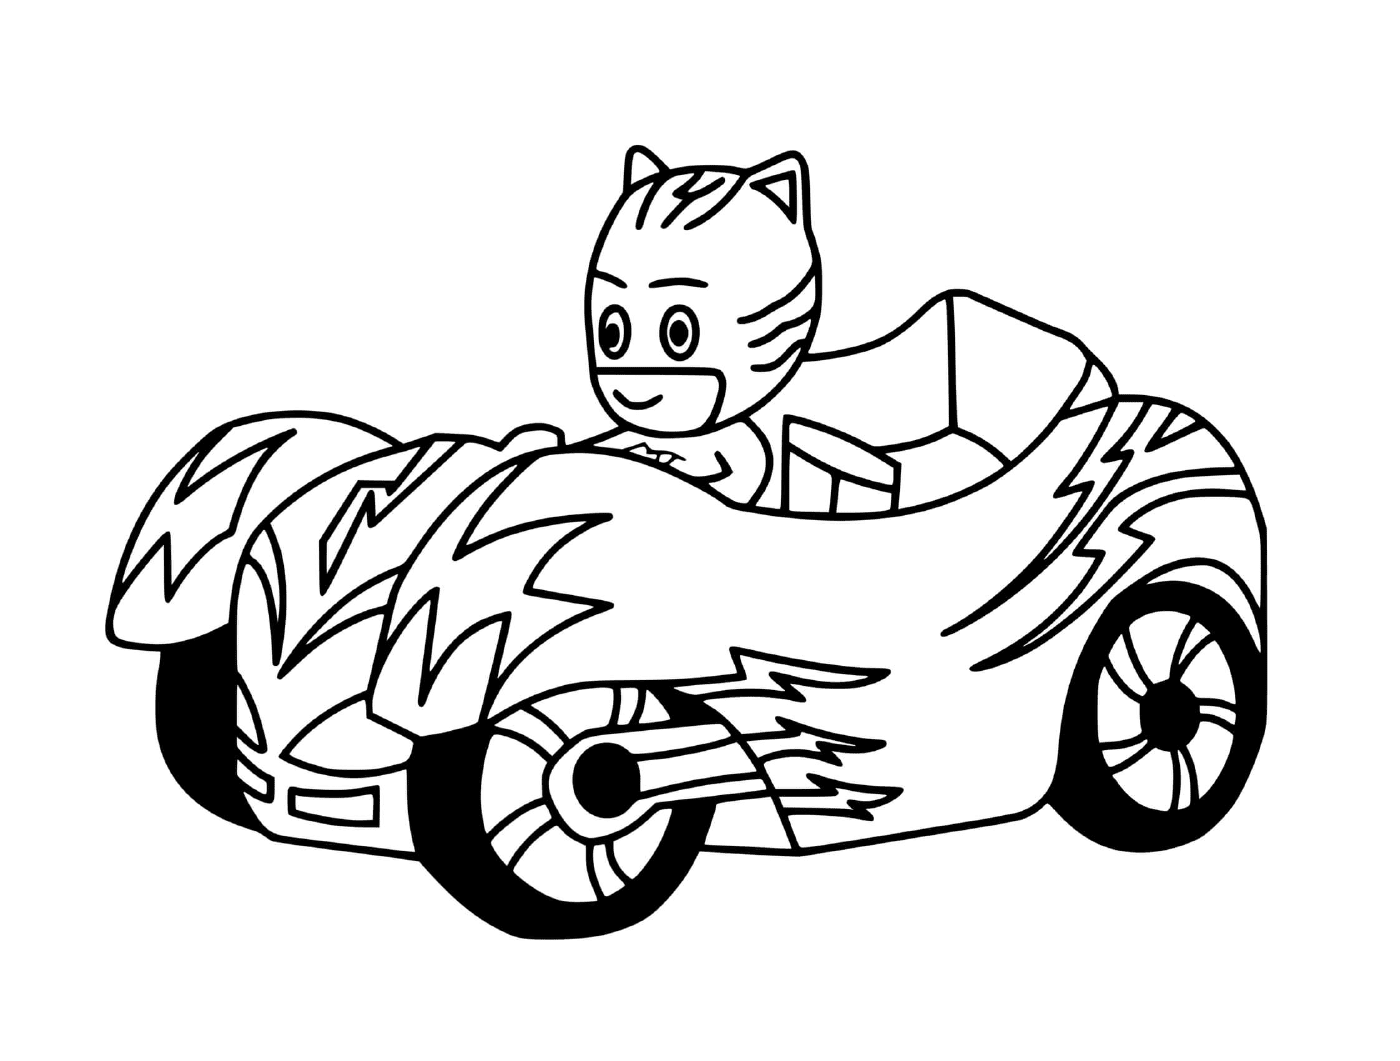  Catboy guida una macchina 